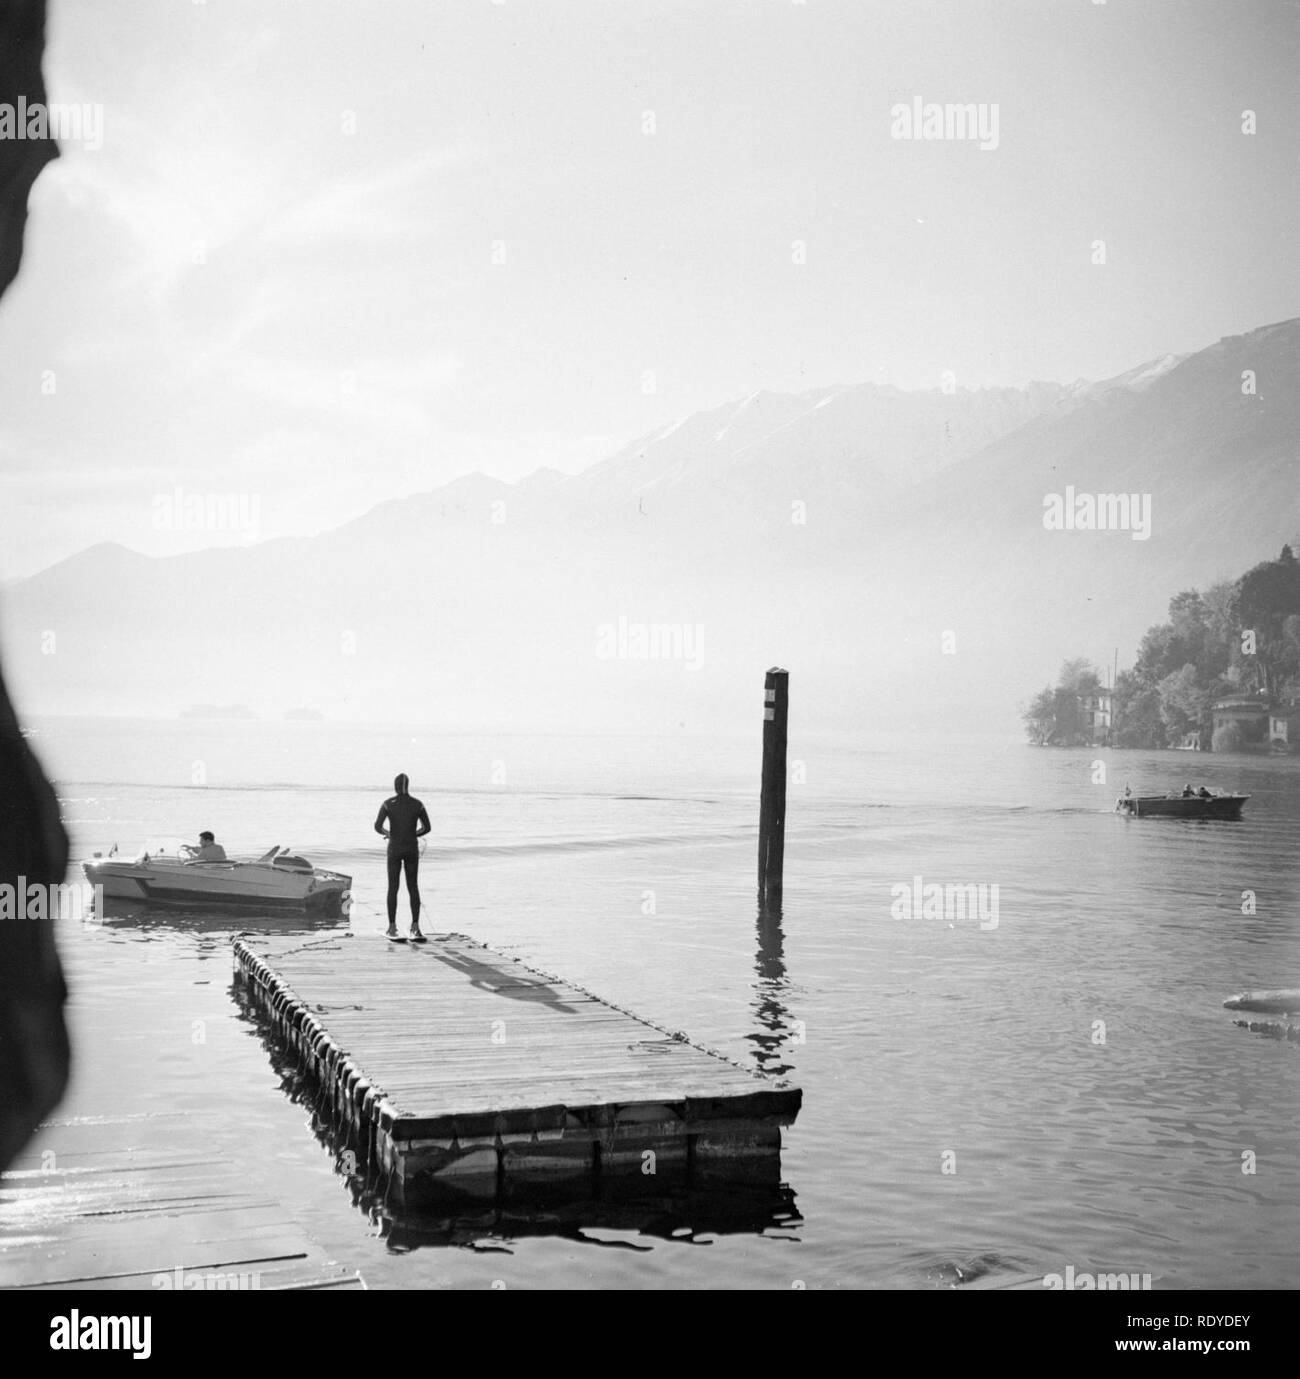 Ascona Haventje met waterskiër, een andere Mann zit in de Boot klaar voor Vertre, Bestanddeelnr 254-4852. Stockfoto